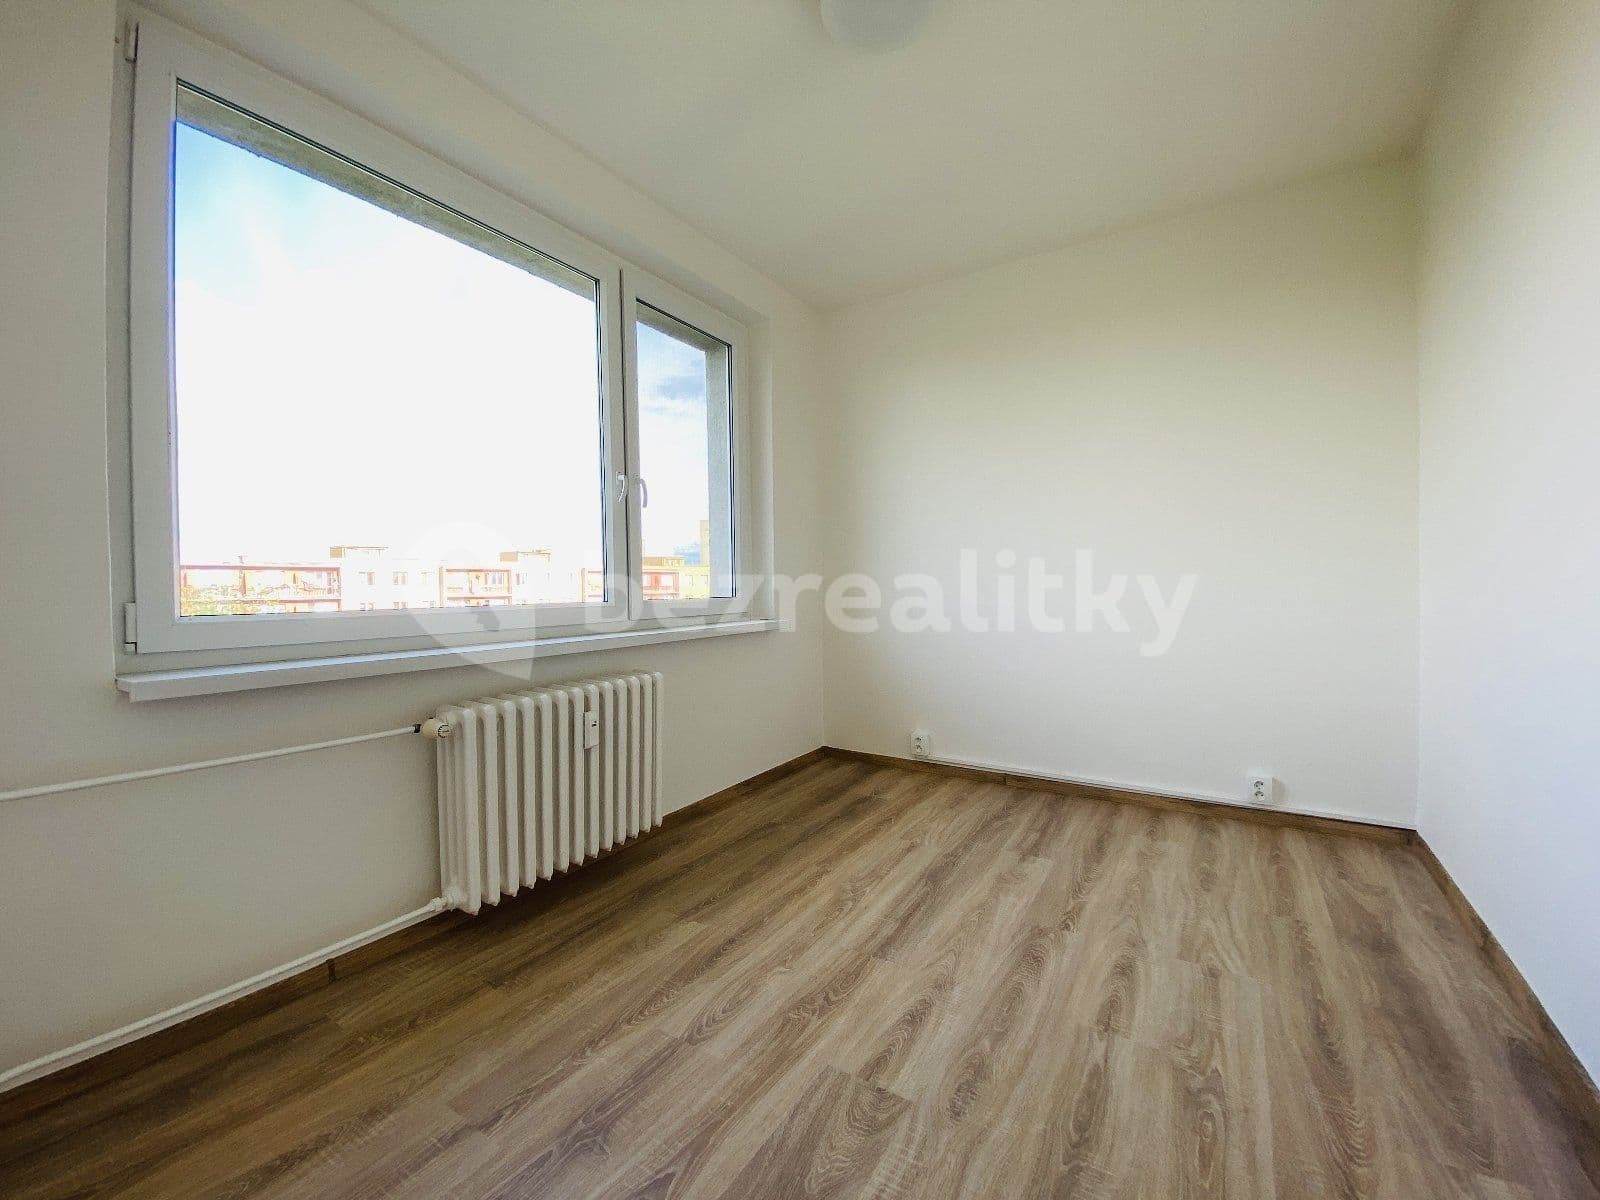 3 bedroom flat to rent, 66 m², náměstí Václava Vacka, Ostrava, Moravskoslezský Region